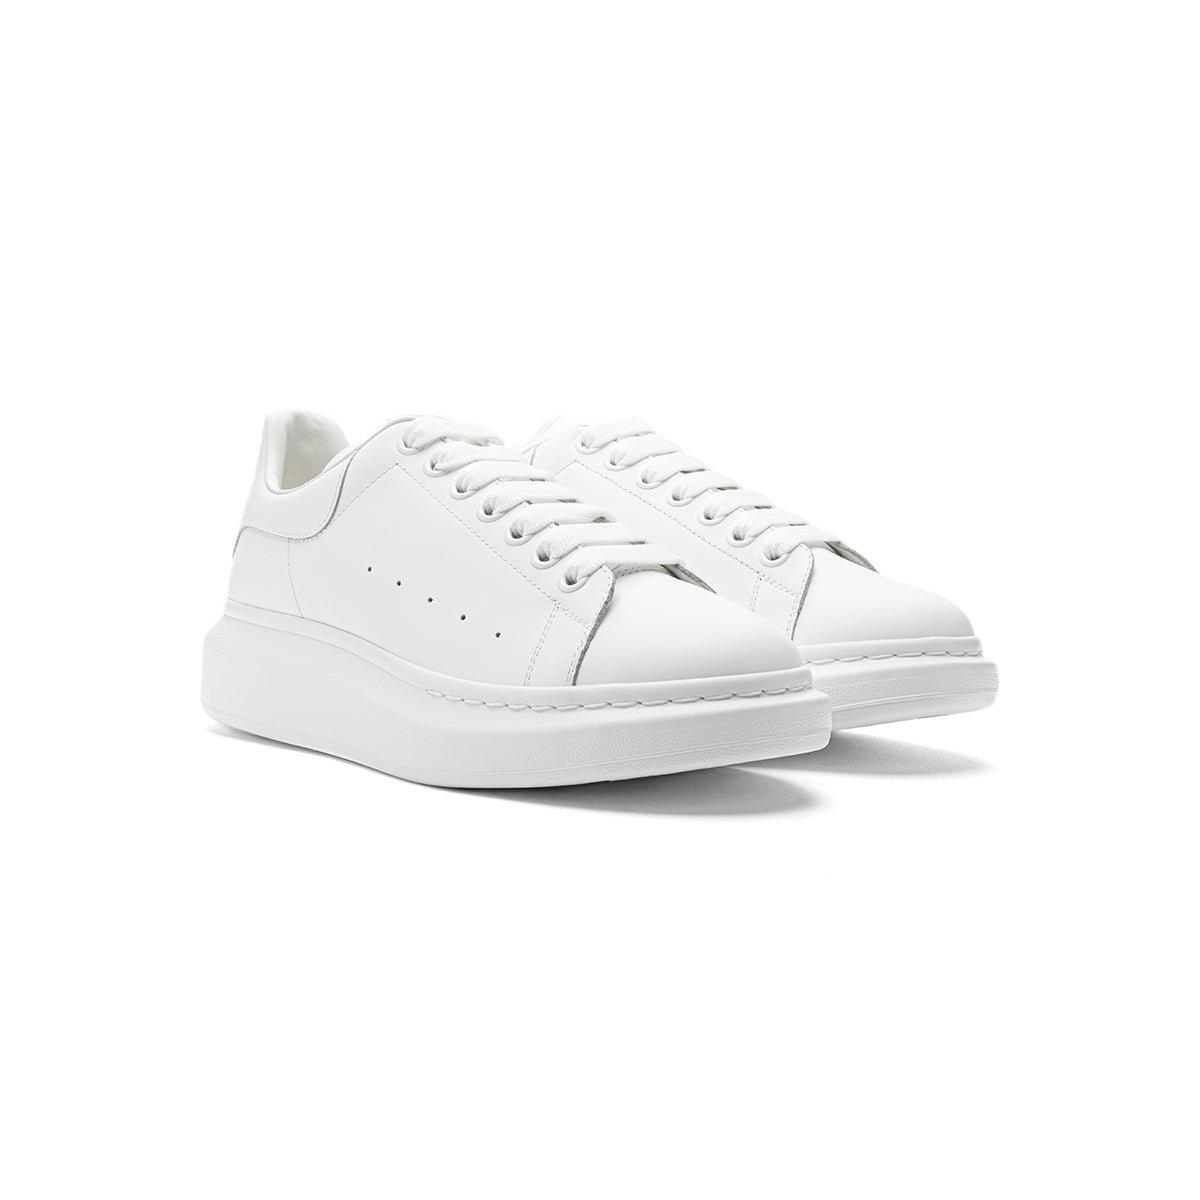 Alexander McQueen Oversized Sneaker (White/White)